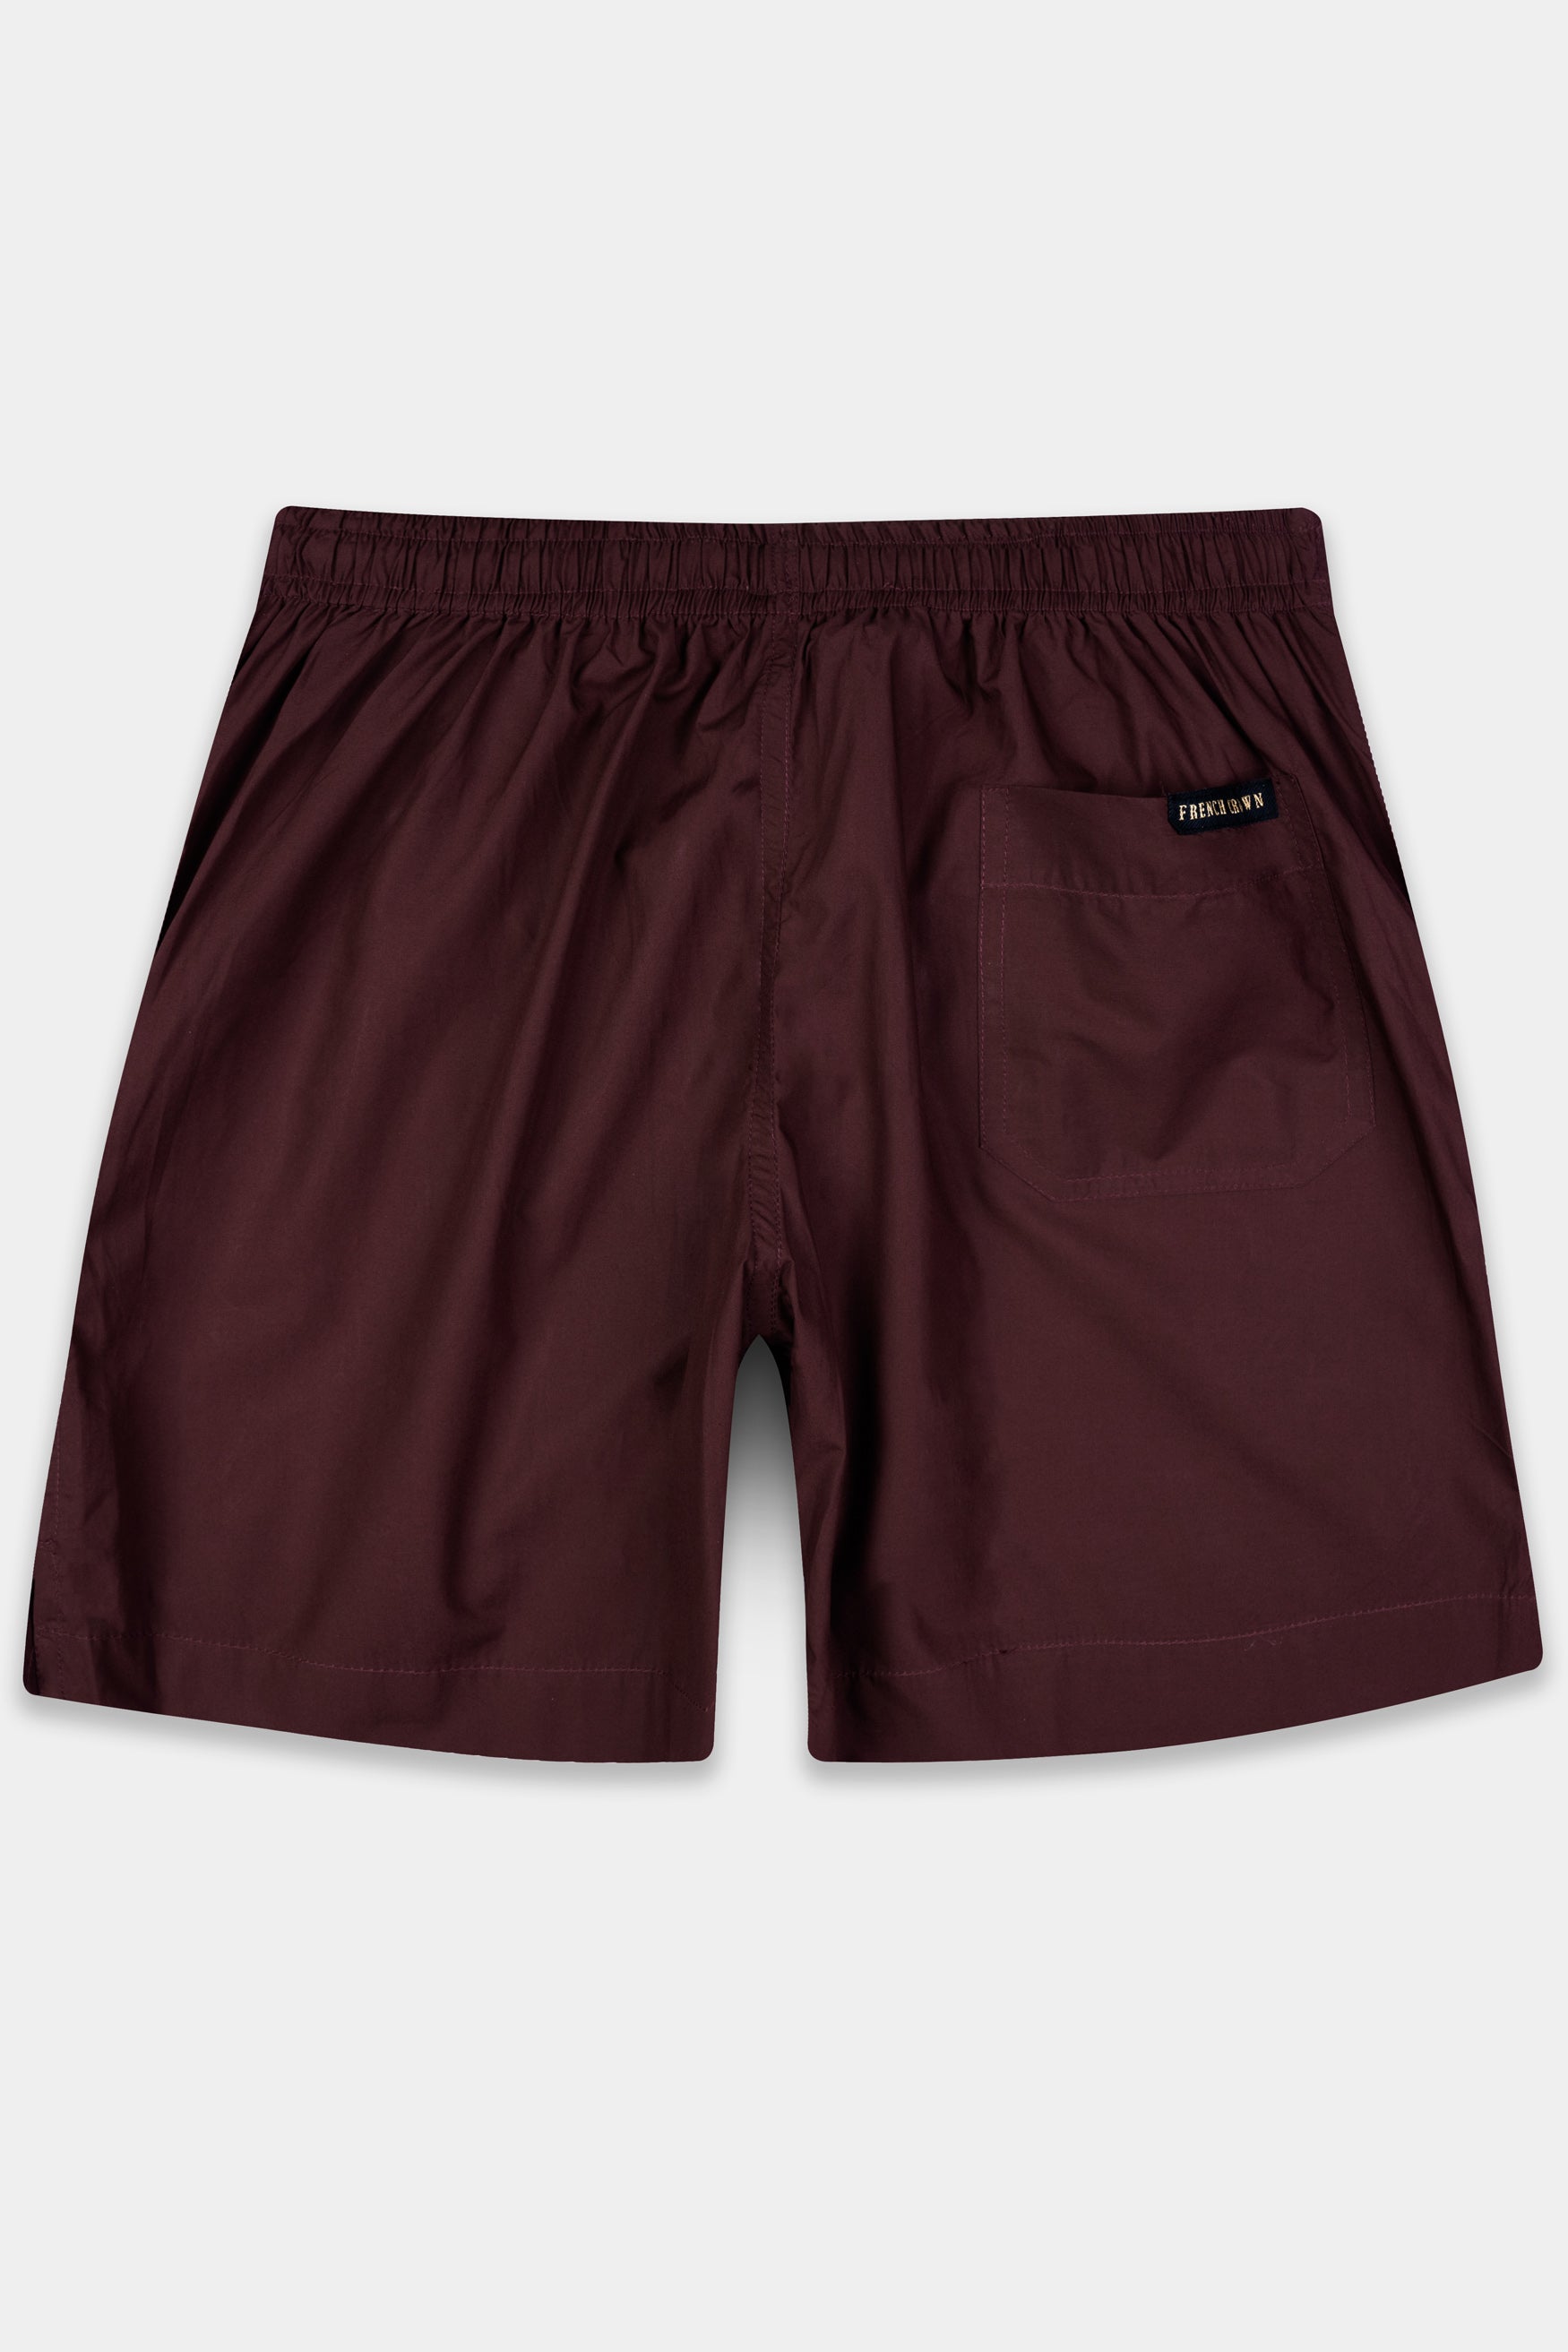 Dark Sienna maroon Premium Cotton Shorts